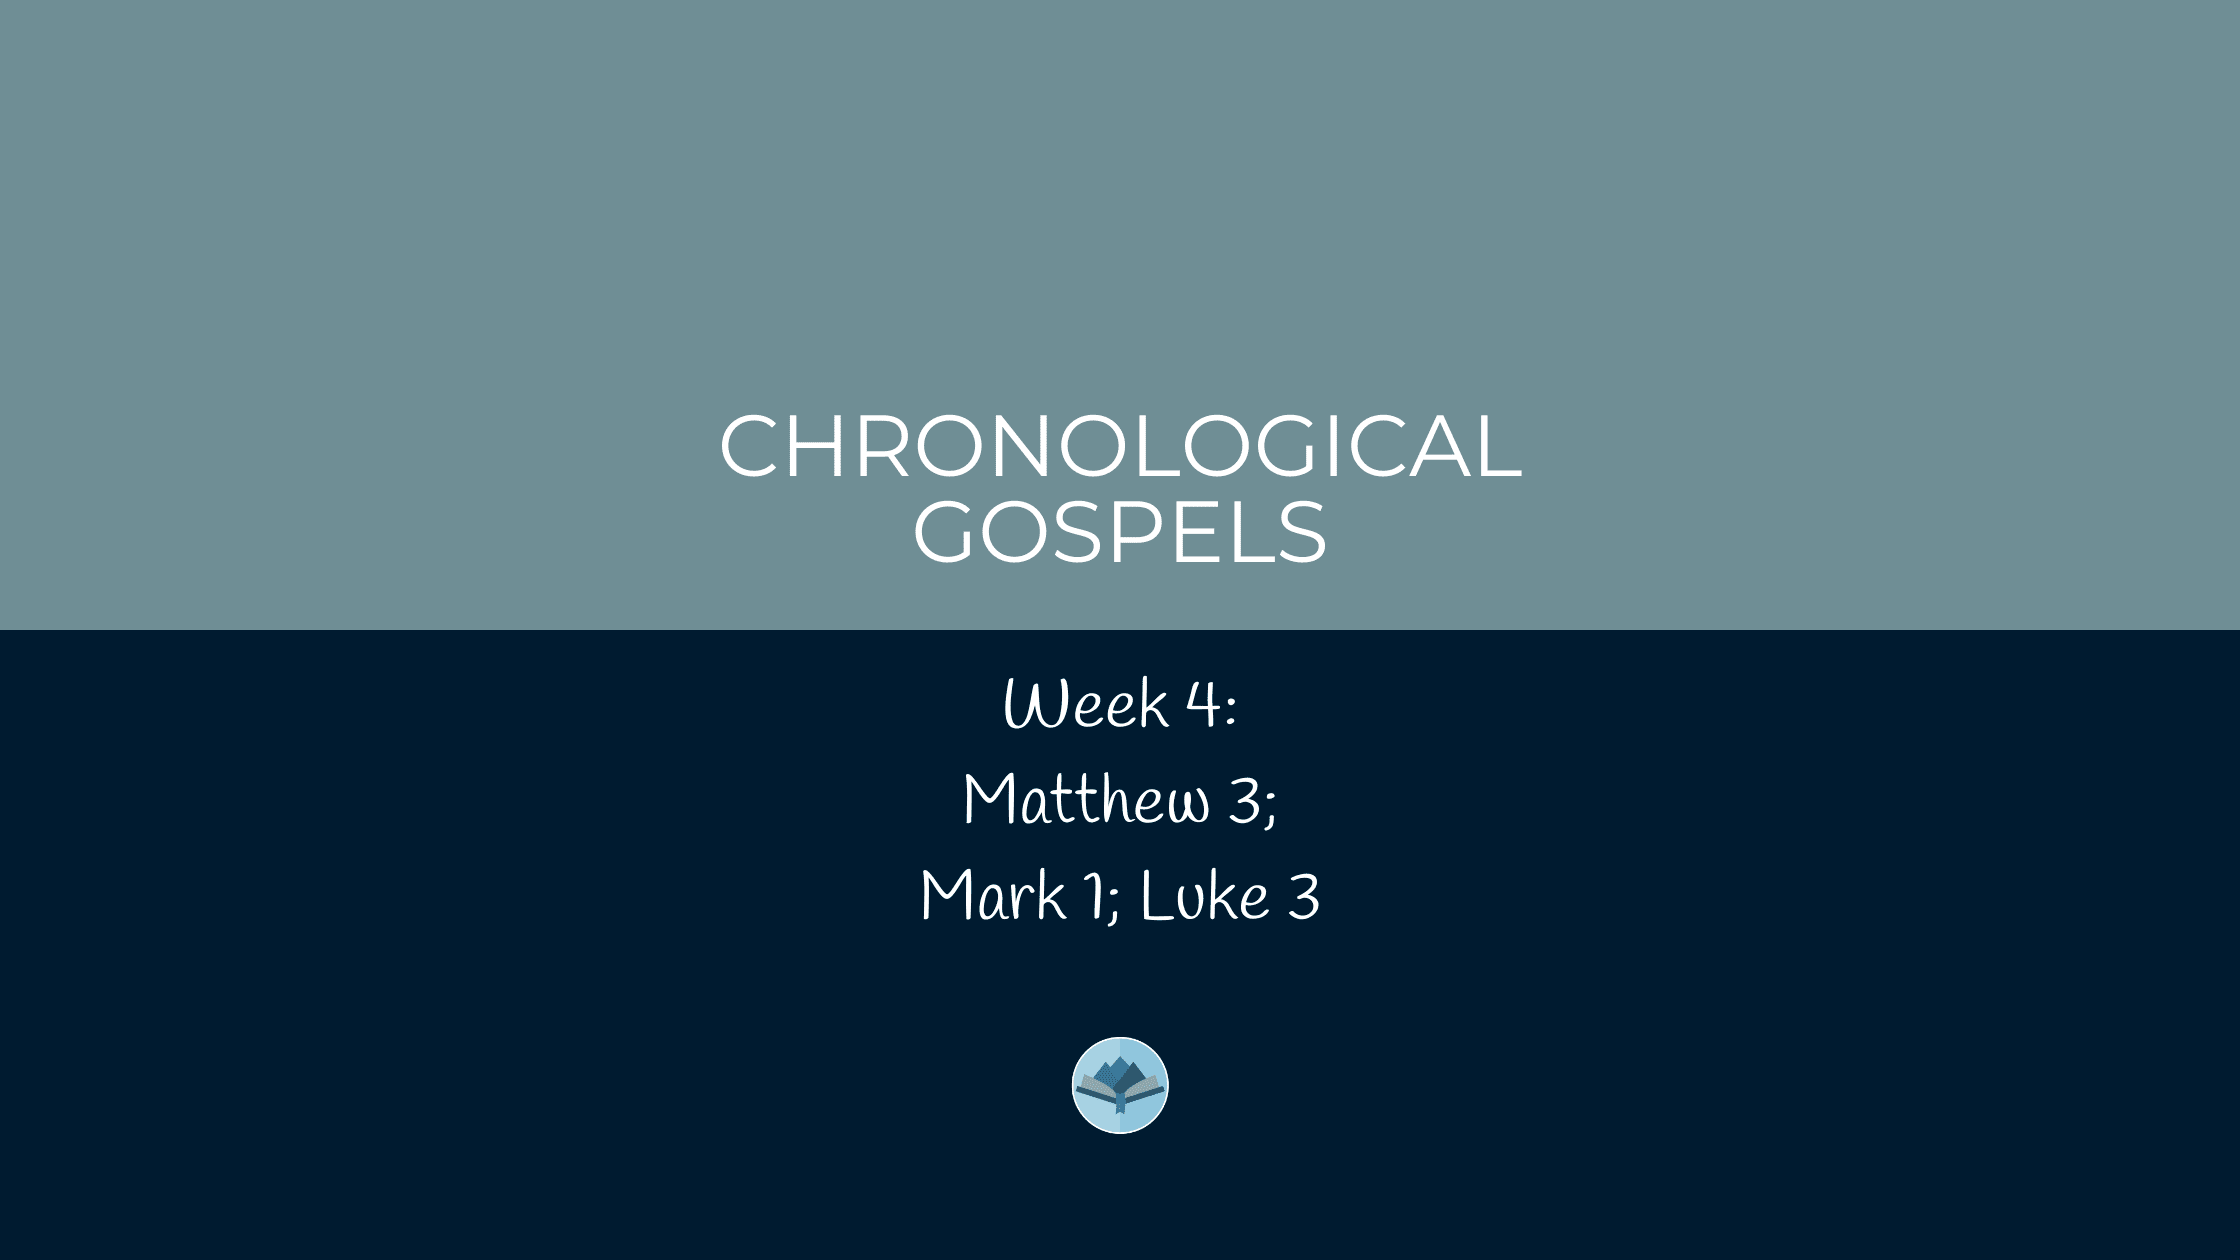 Chronological Gospels: Matthew 3; Mark 1; Luke 3